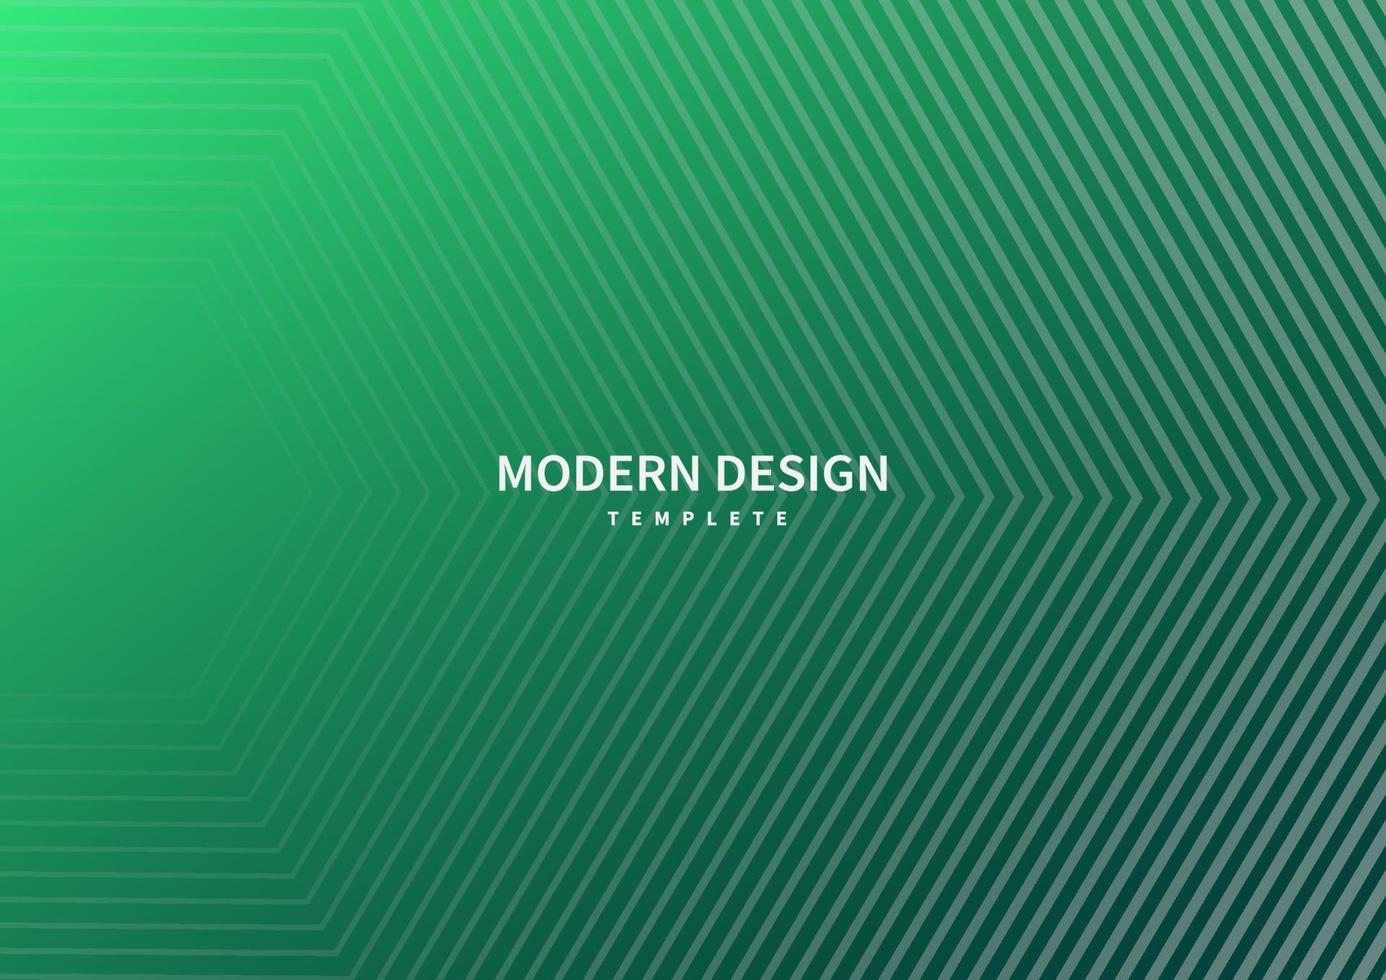 abstrakta moderna randiga linjer på grön smaragdbakgrund. vektor